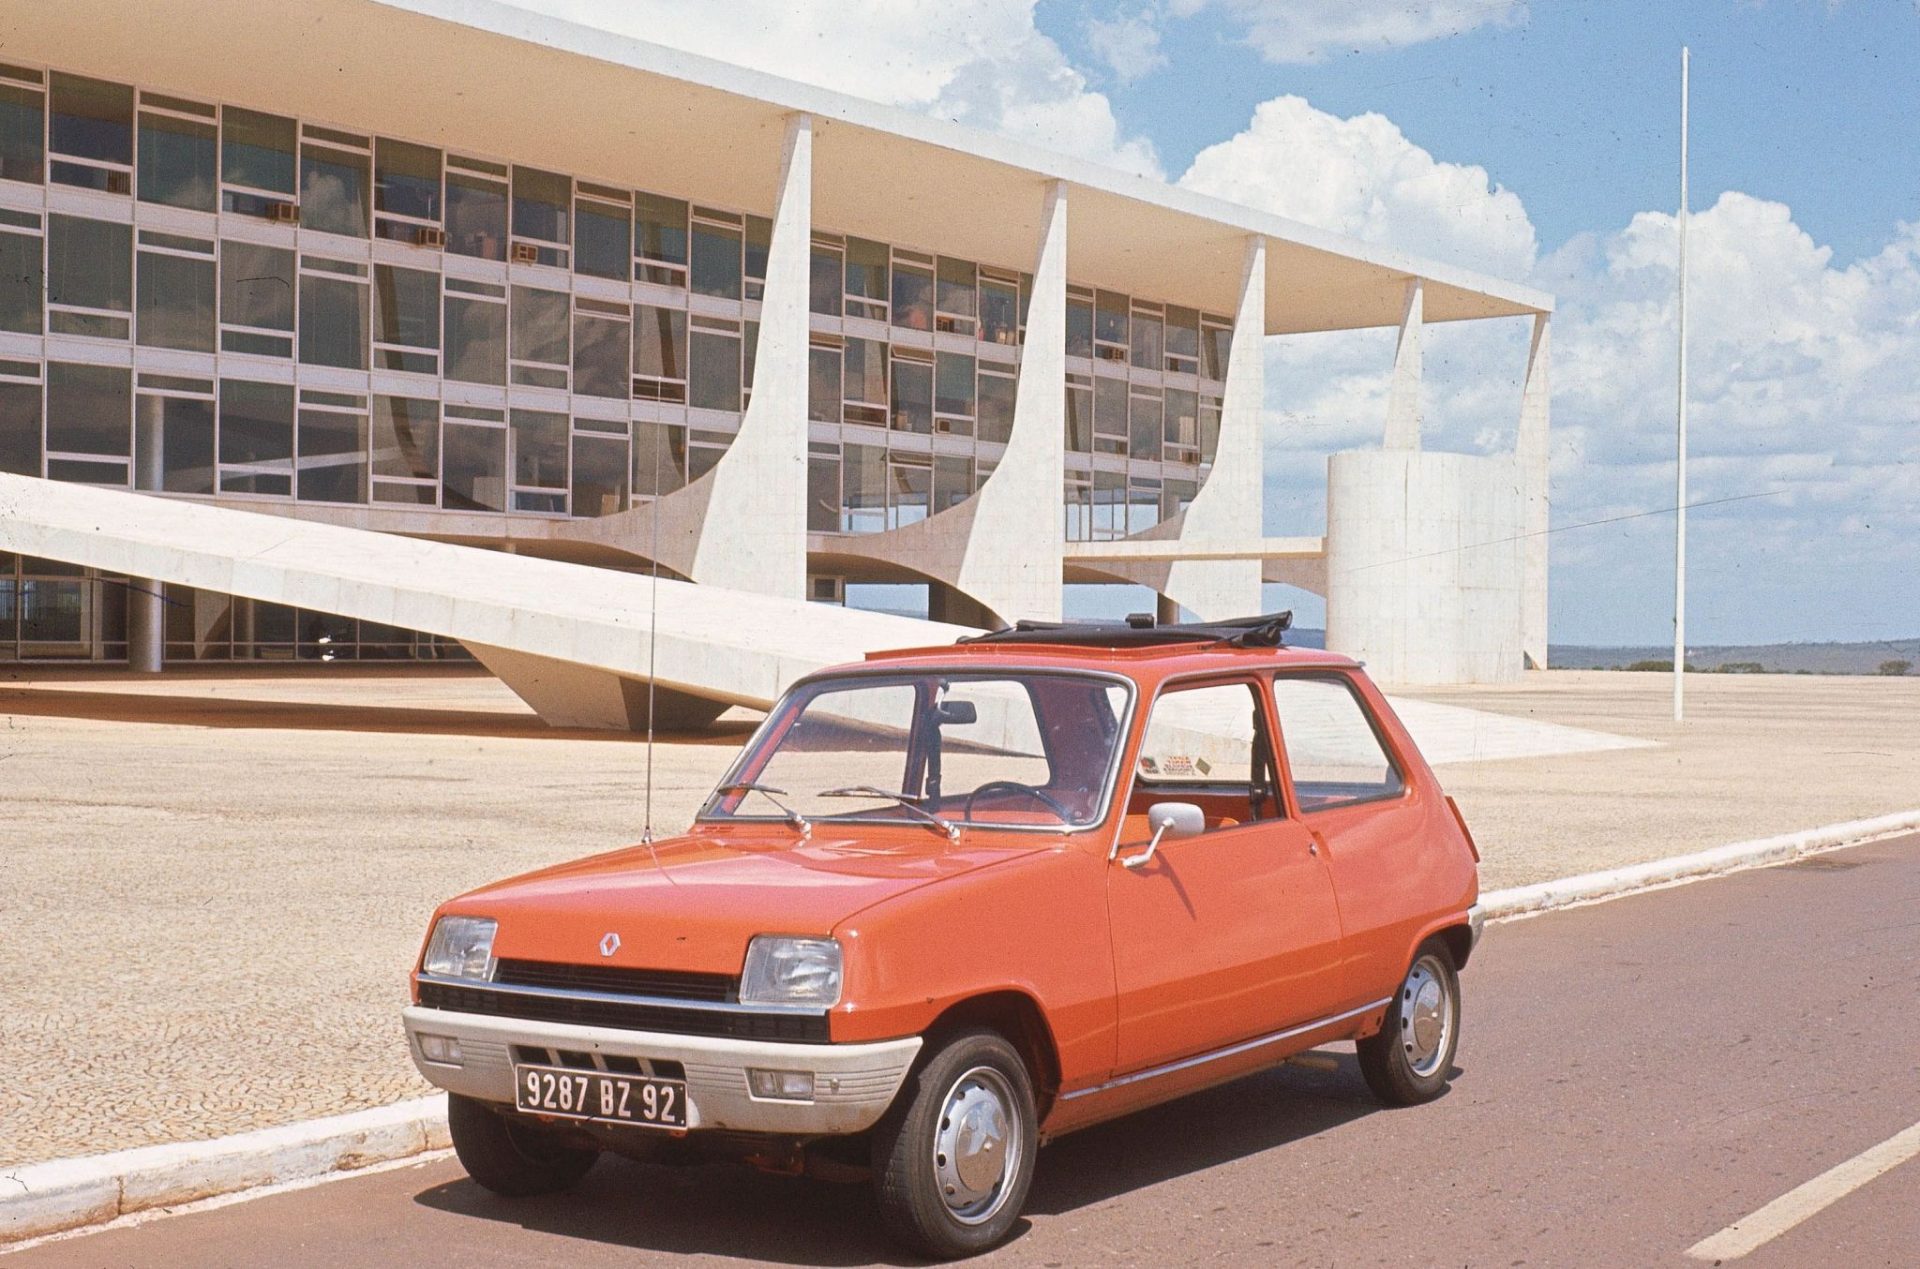 renault 5 tl decouvrable 1972 vermelho frente parado em frente ao palacio do planalto